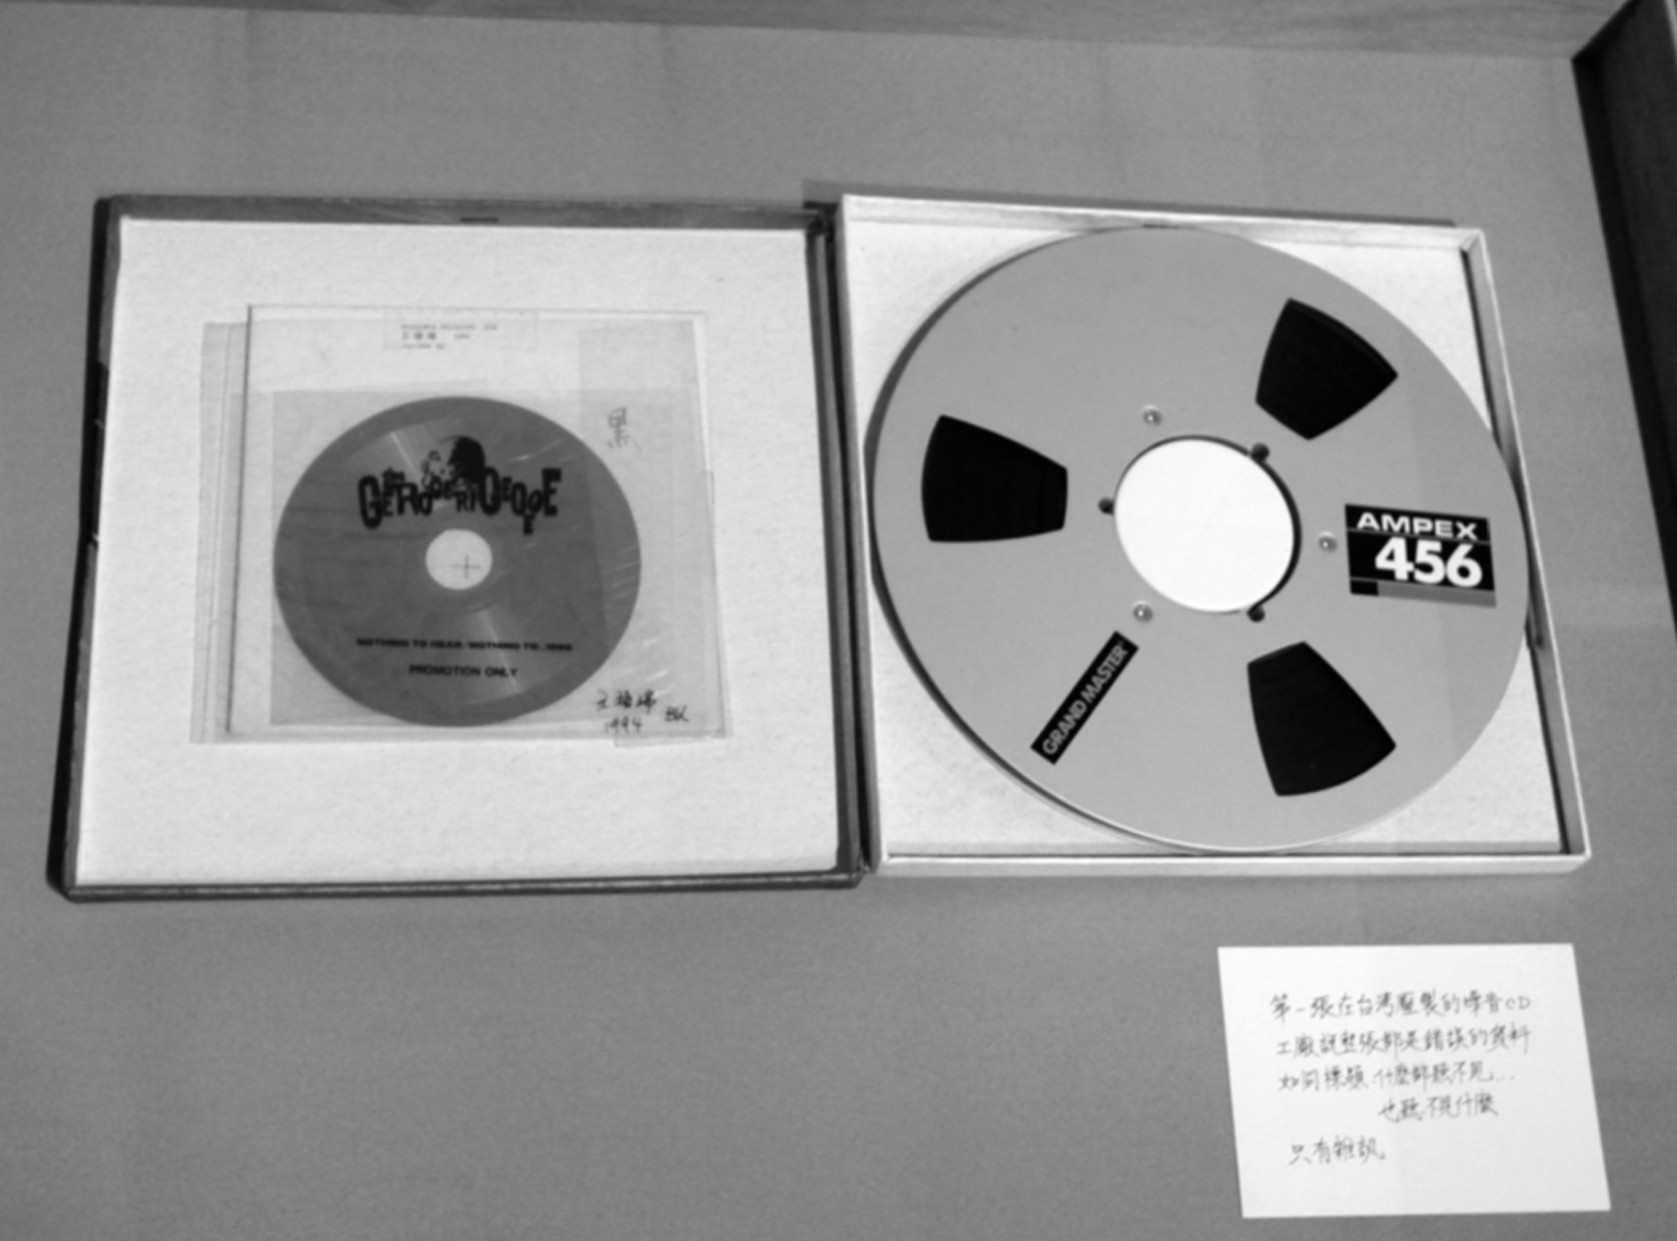 台灣壓制的第一張噪音CD；響相工作室盧藝提供-圖片